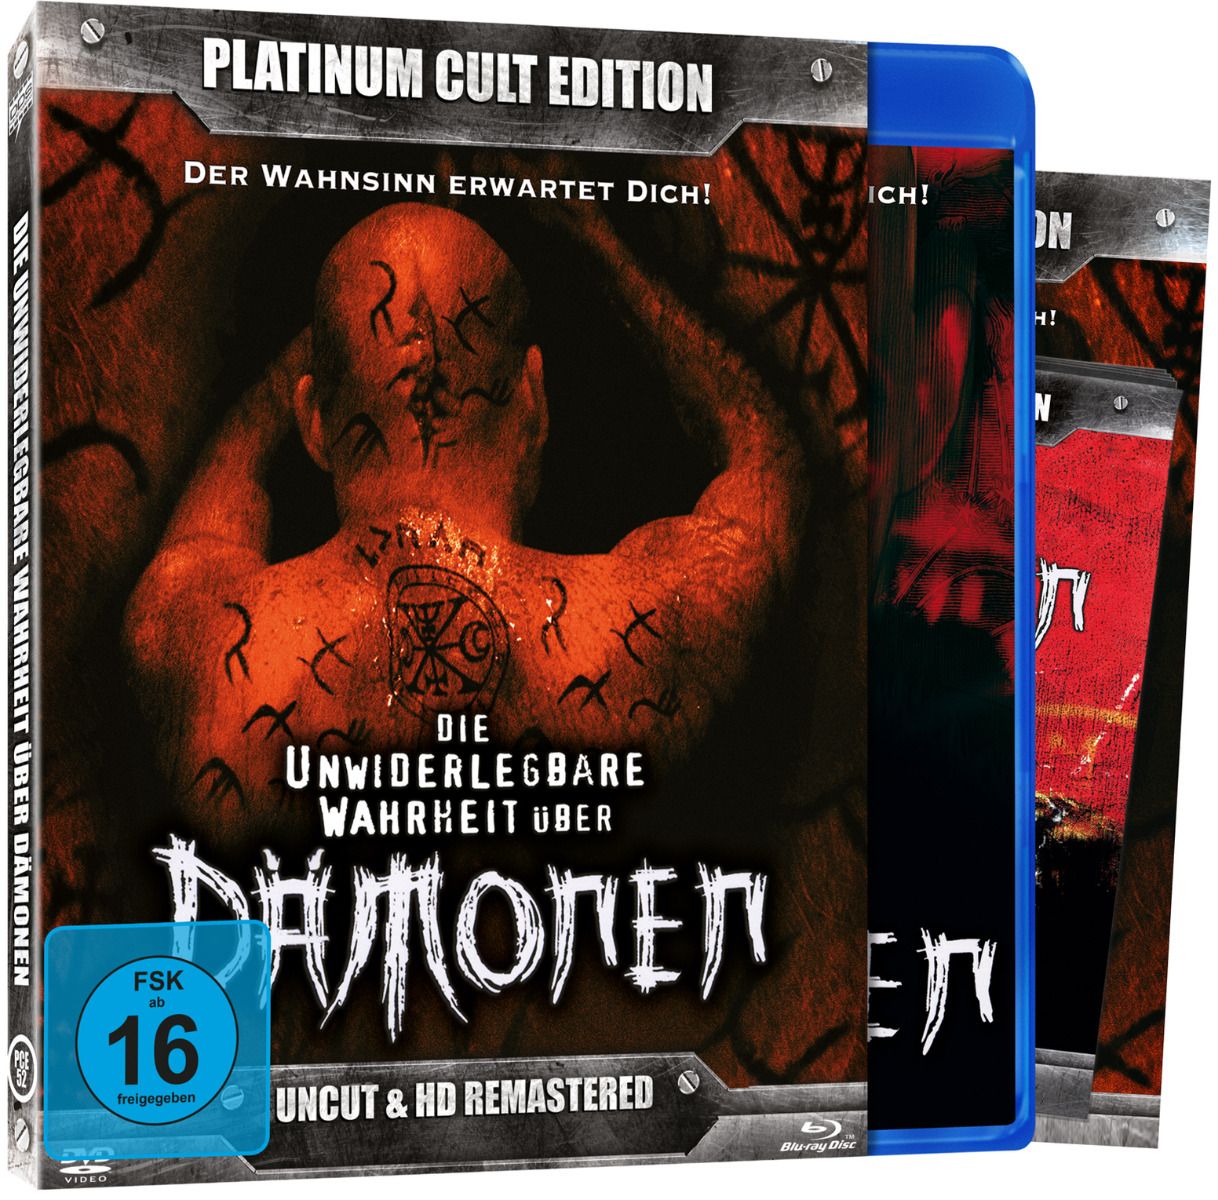 Die unwiderlegbare Wahrheit über Dämonen (Blu-Ray+DVD) - Platinum Cult Edition - Uncut